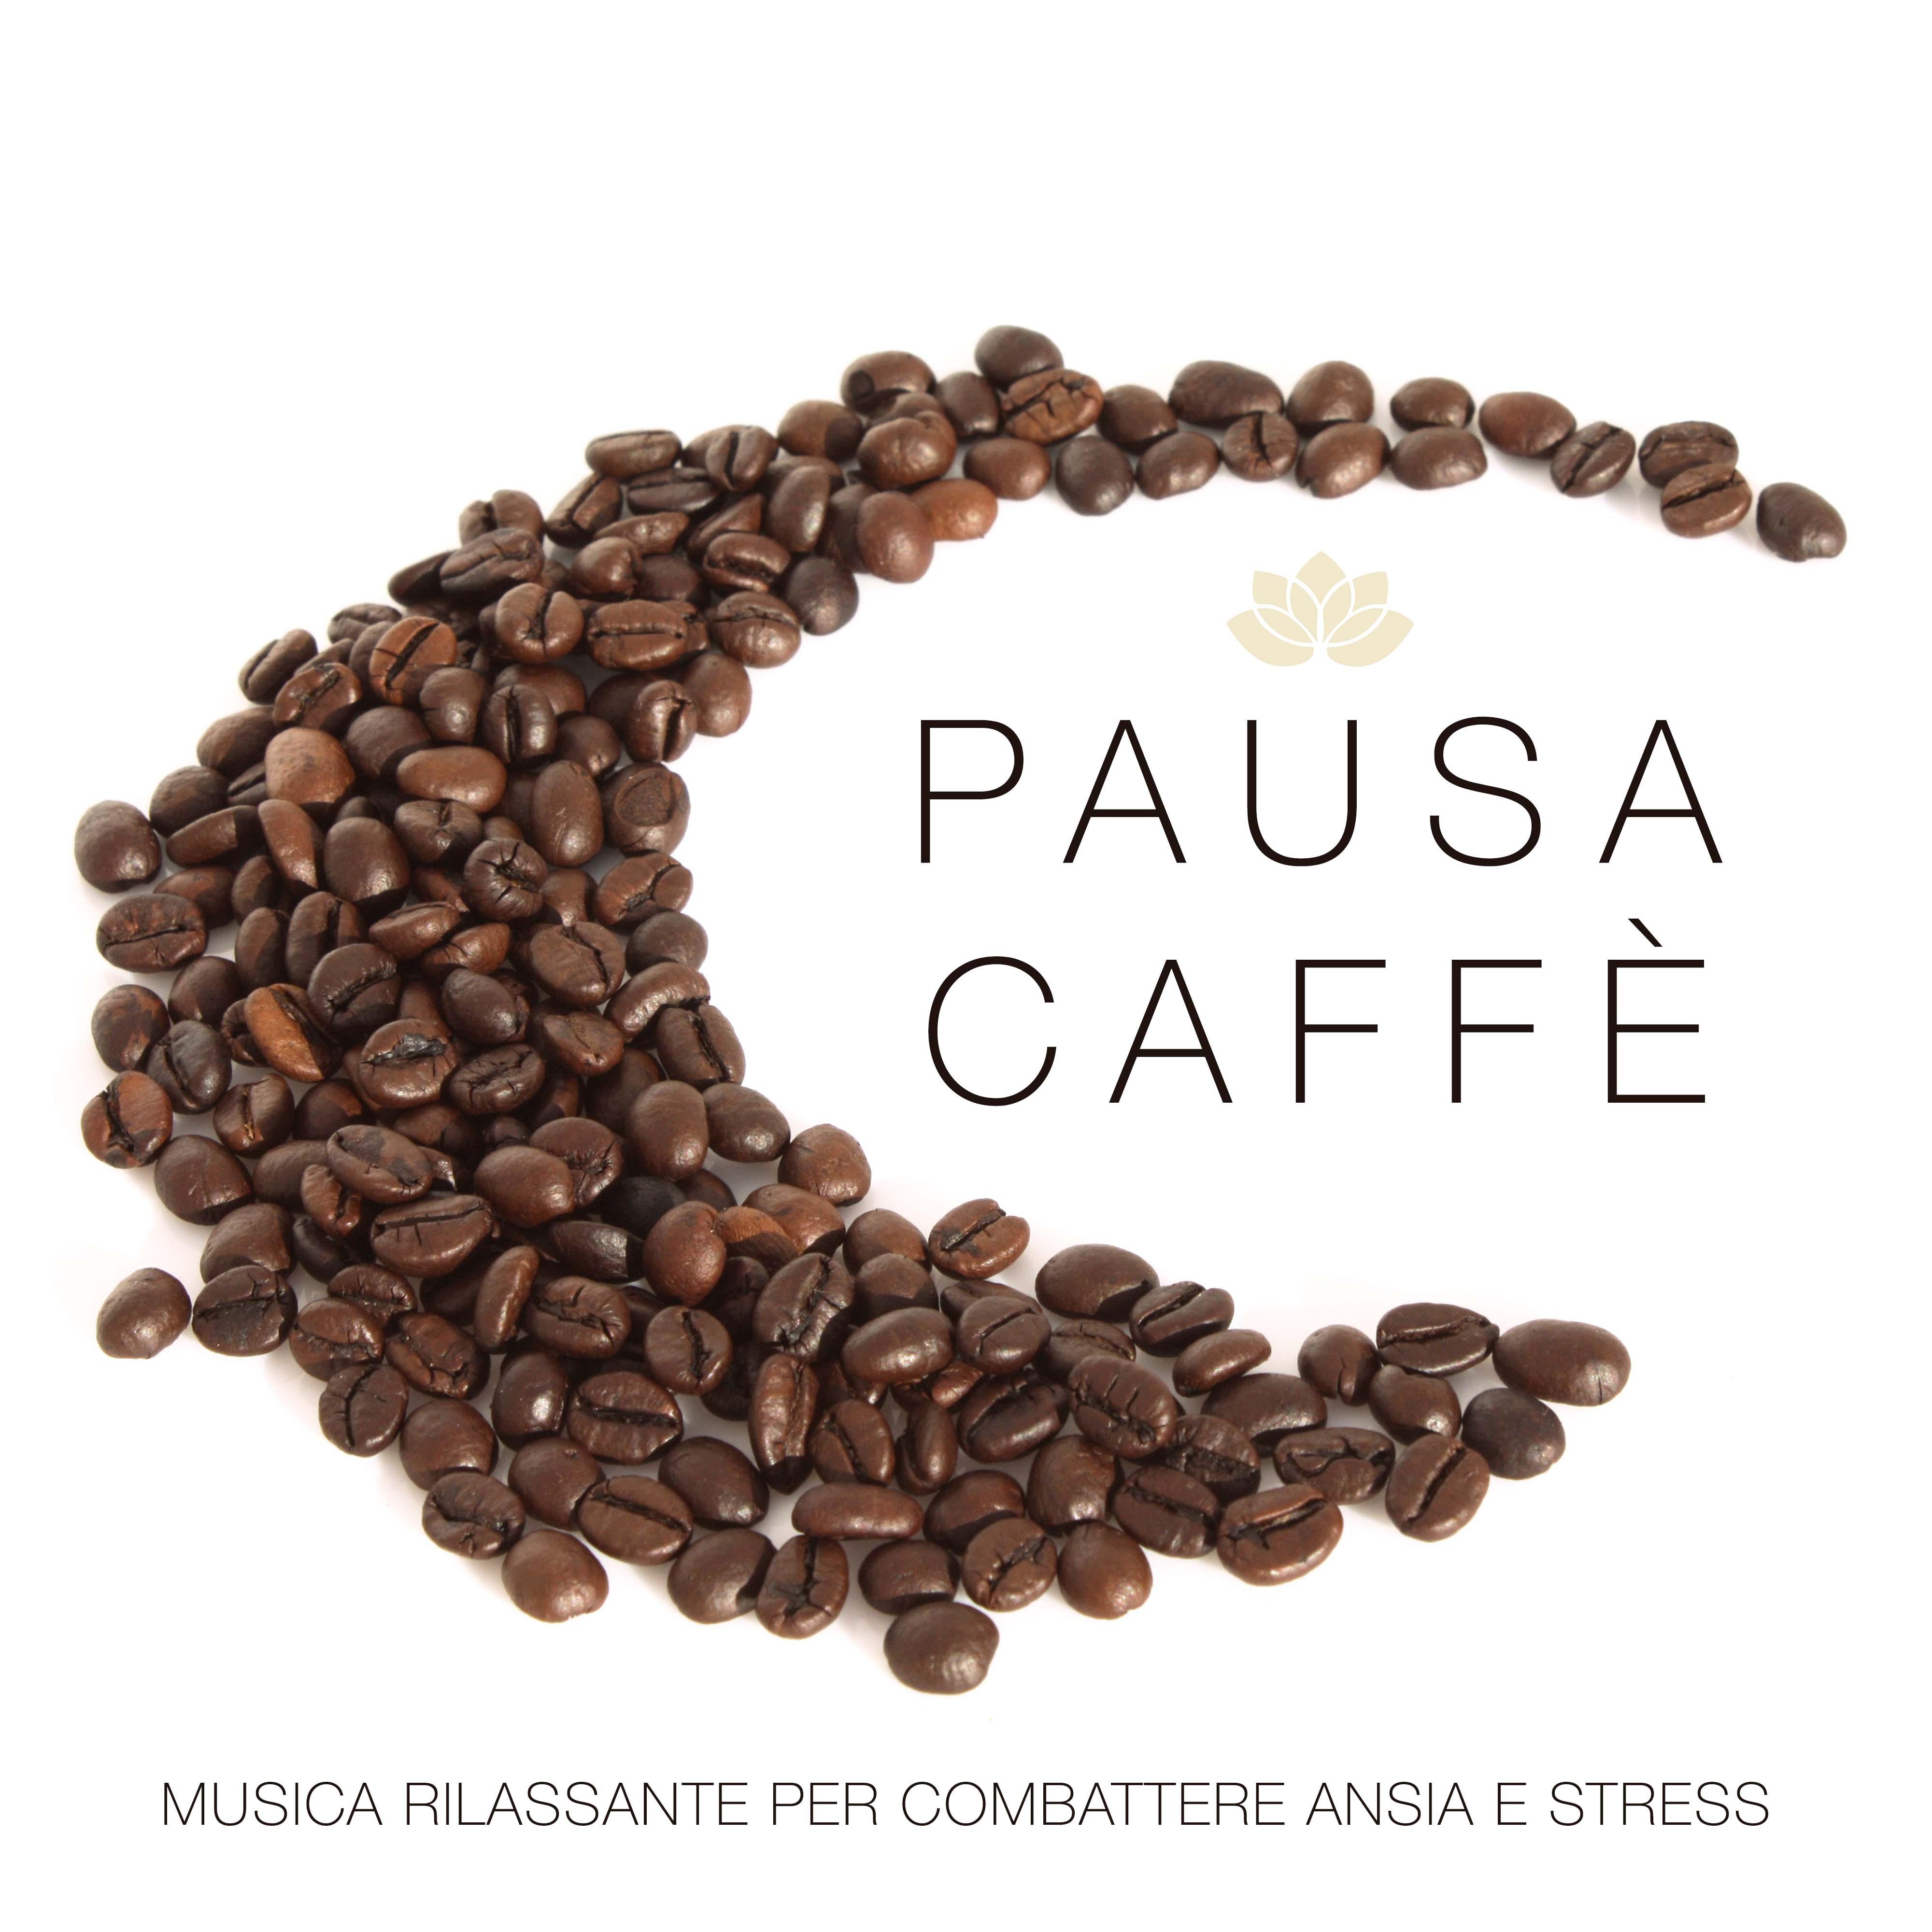 Pausa Caffe  Musica Rilassante per Combattere Ansia e Stress